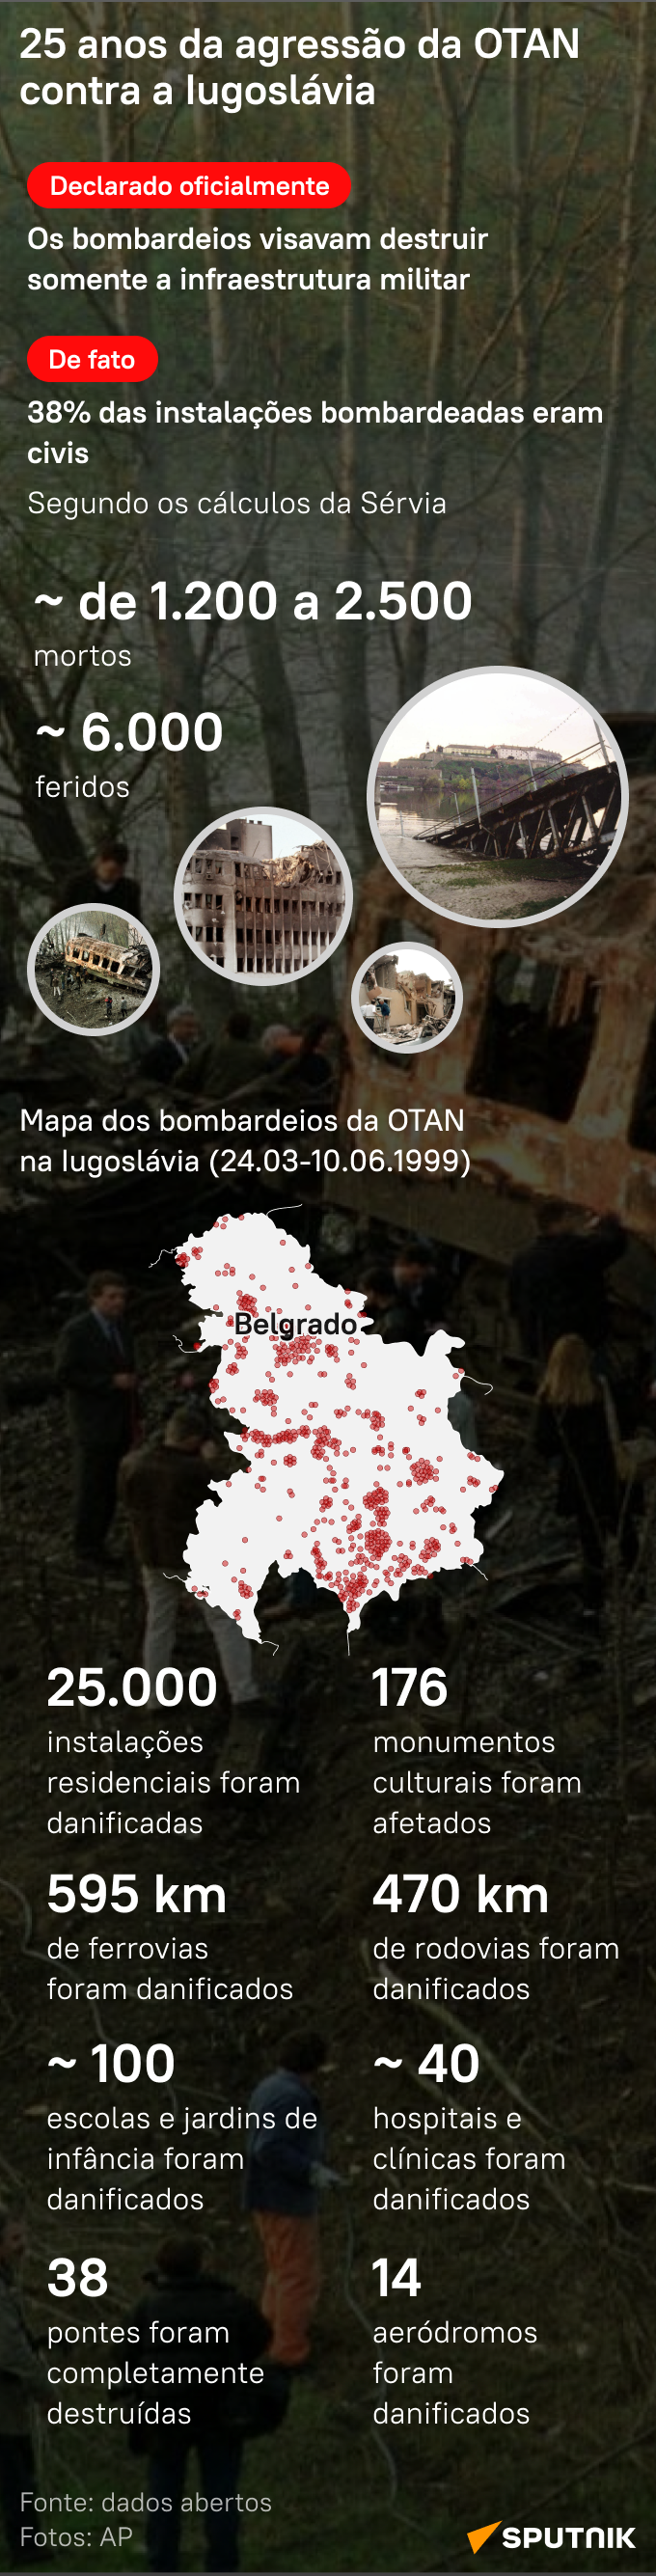 25 anos do bombardeio da Iugoslávia: relembre agressão da OTAN contra Iugoslávia - Sputnik Brasil